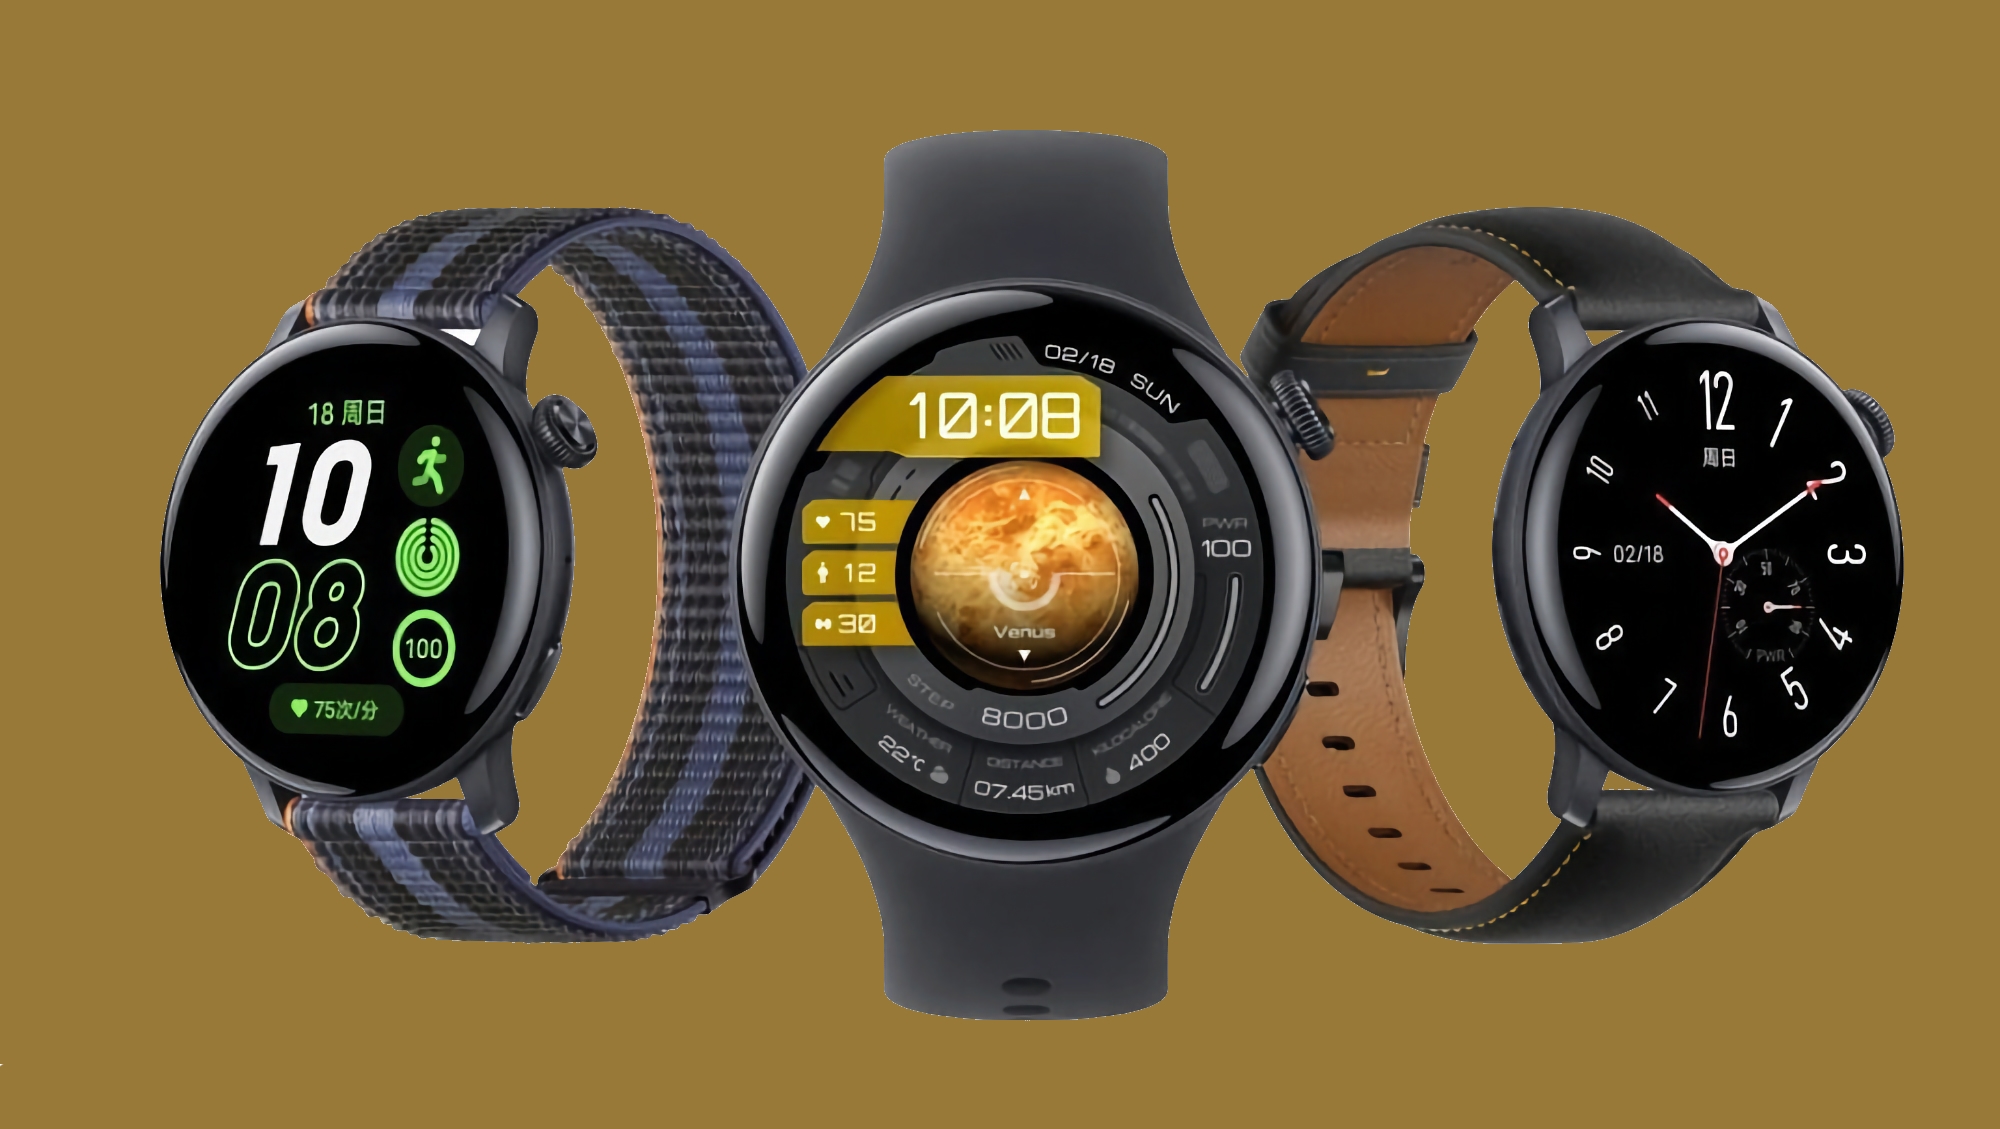 iQOO Watch : smartwatch avec écran AMOLED, eSIM, capteur SpO2, NFC et BlueOS embarqué pour 183 dollars